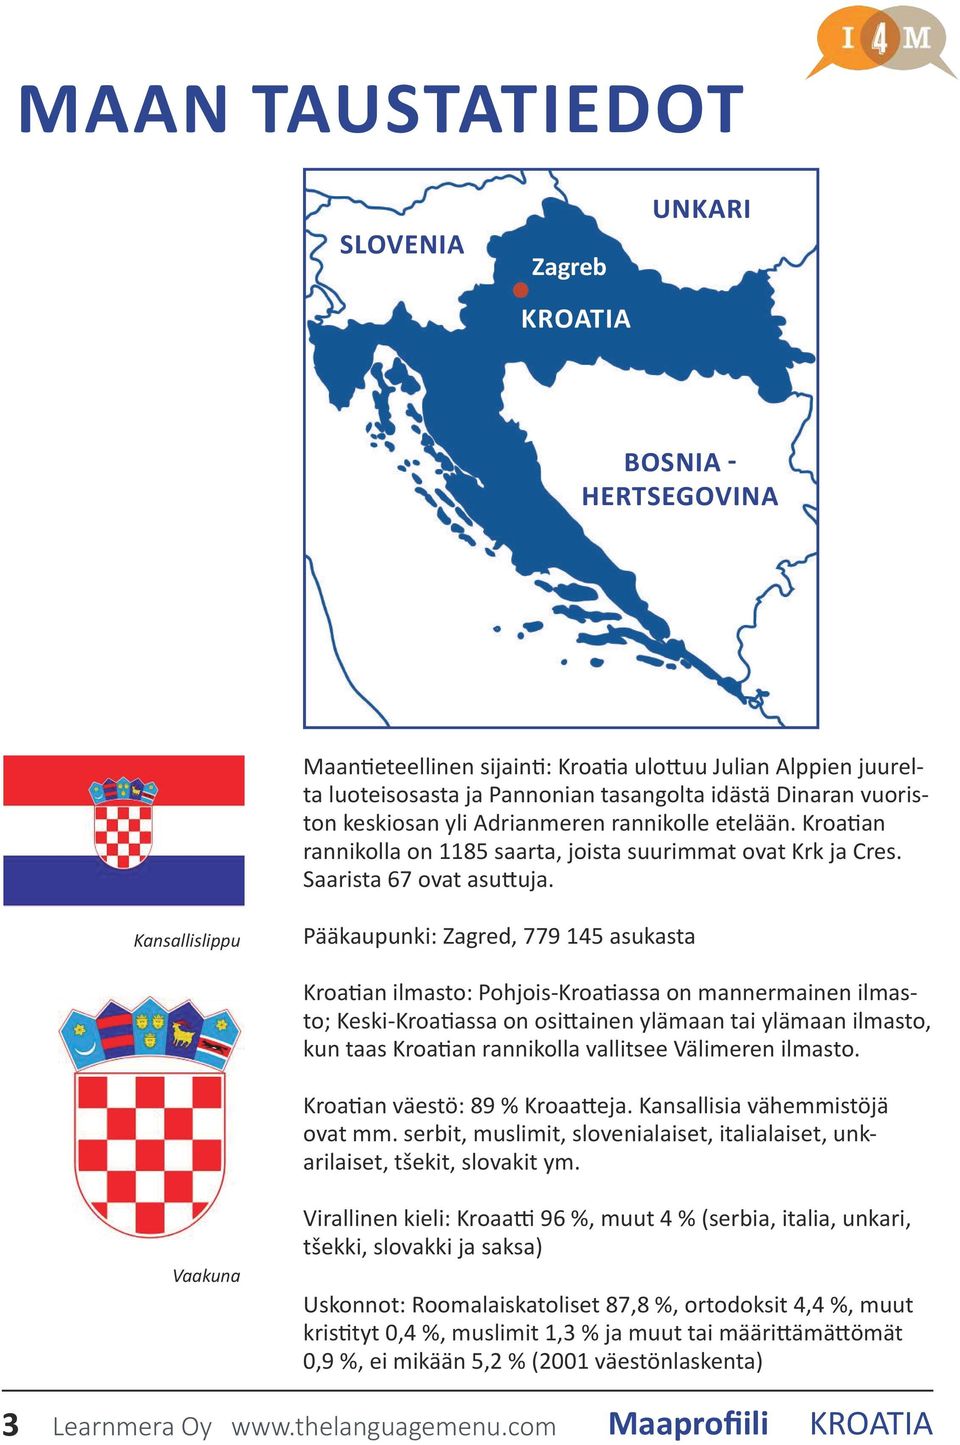 Kansallislippu Pääkaupunki: Zagred, 779 145 asukasta Kroatian ilmasto: Pohjois-Kroatiassa on mannermainen ilmasto; Keski-Kroatiassa on osittainen ylämaan tai ylämaan ilmasto, kun taas Kroatian